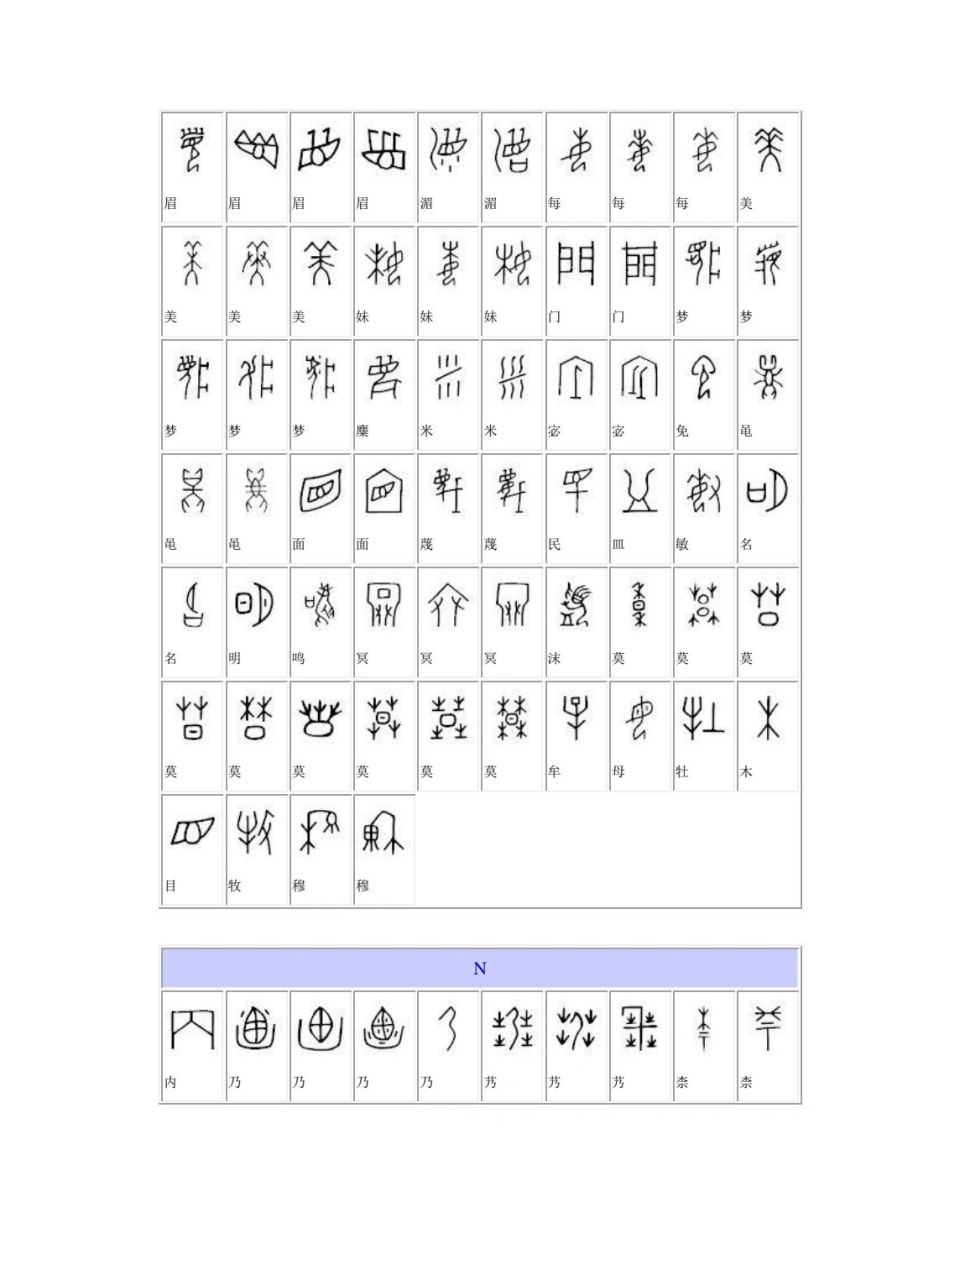 一年级古汉字对照表图片